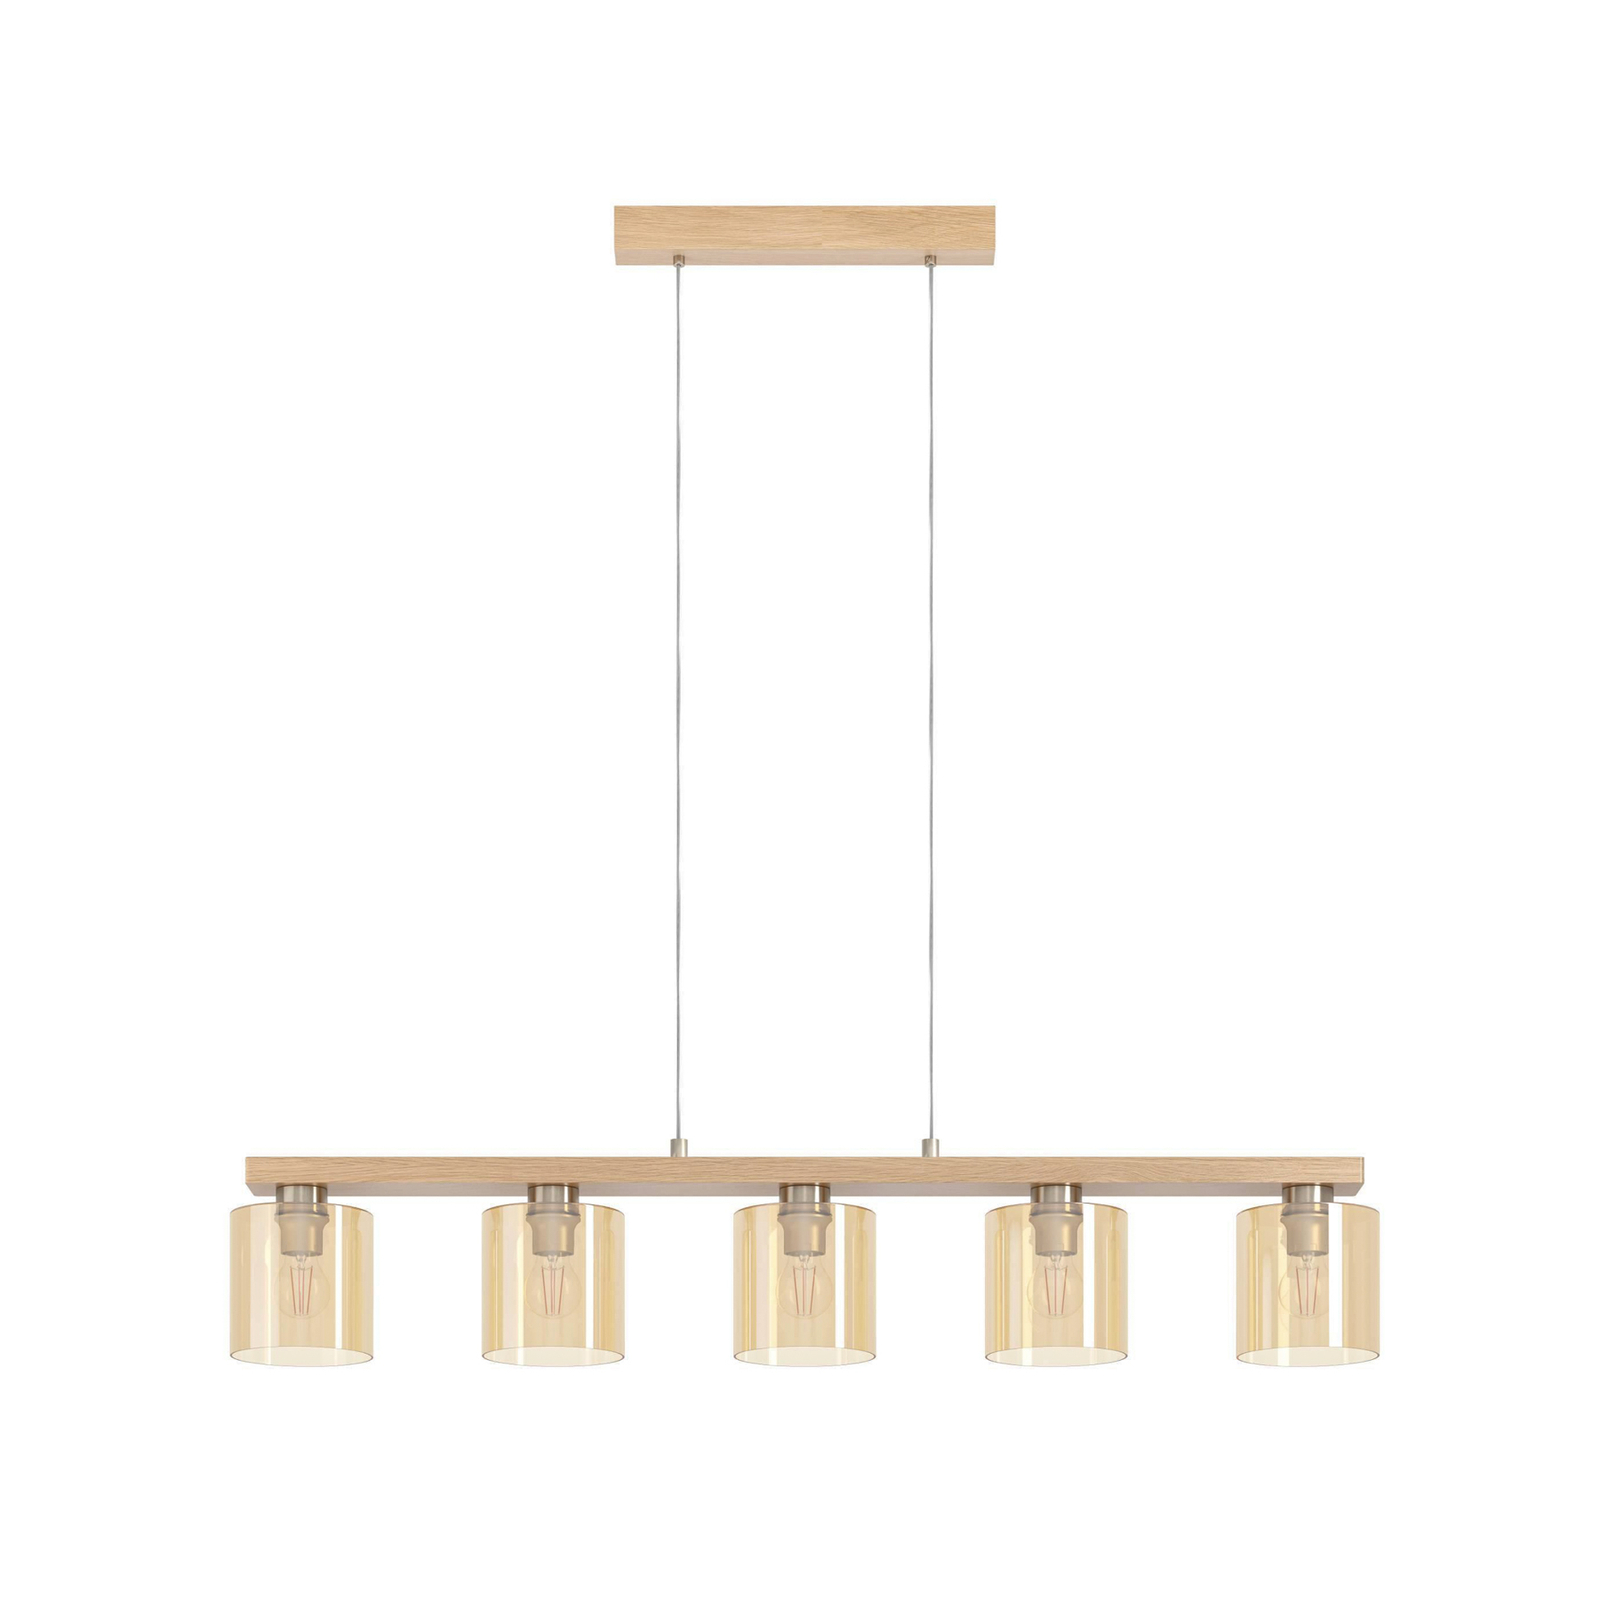 Castralvo hængelampe, længde 115 cm, træ/amber, 5 lyskilder, glas